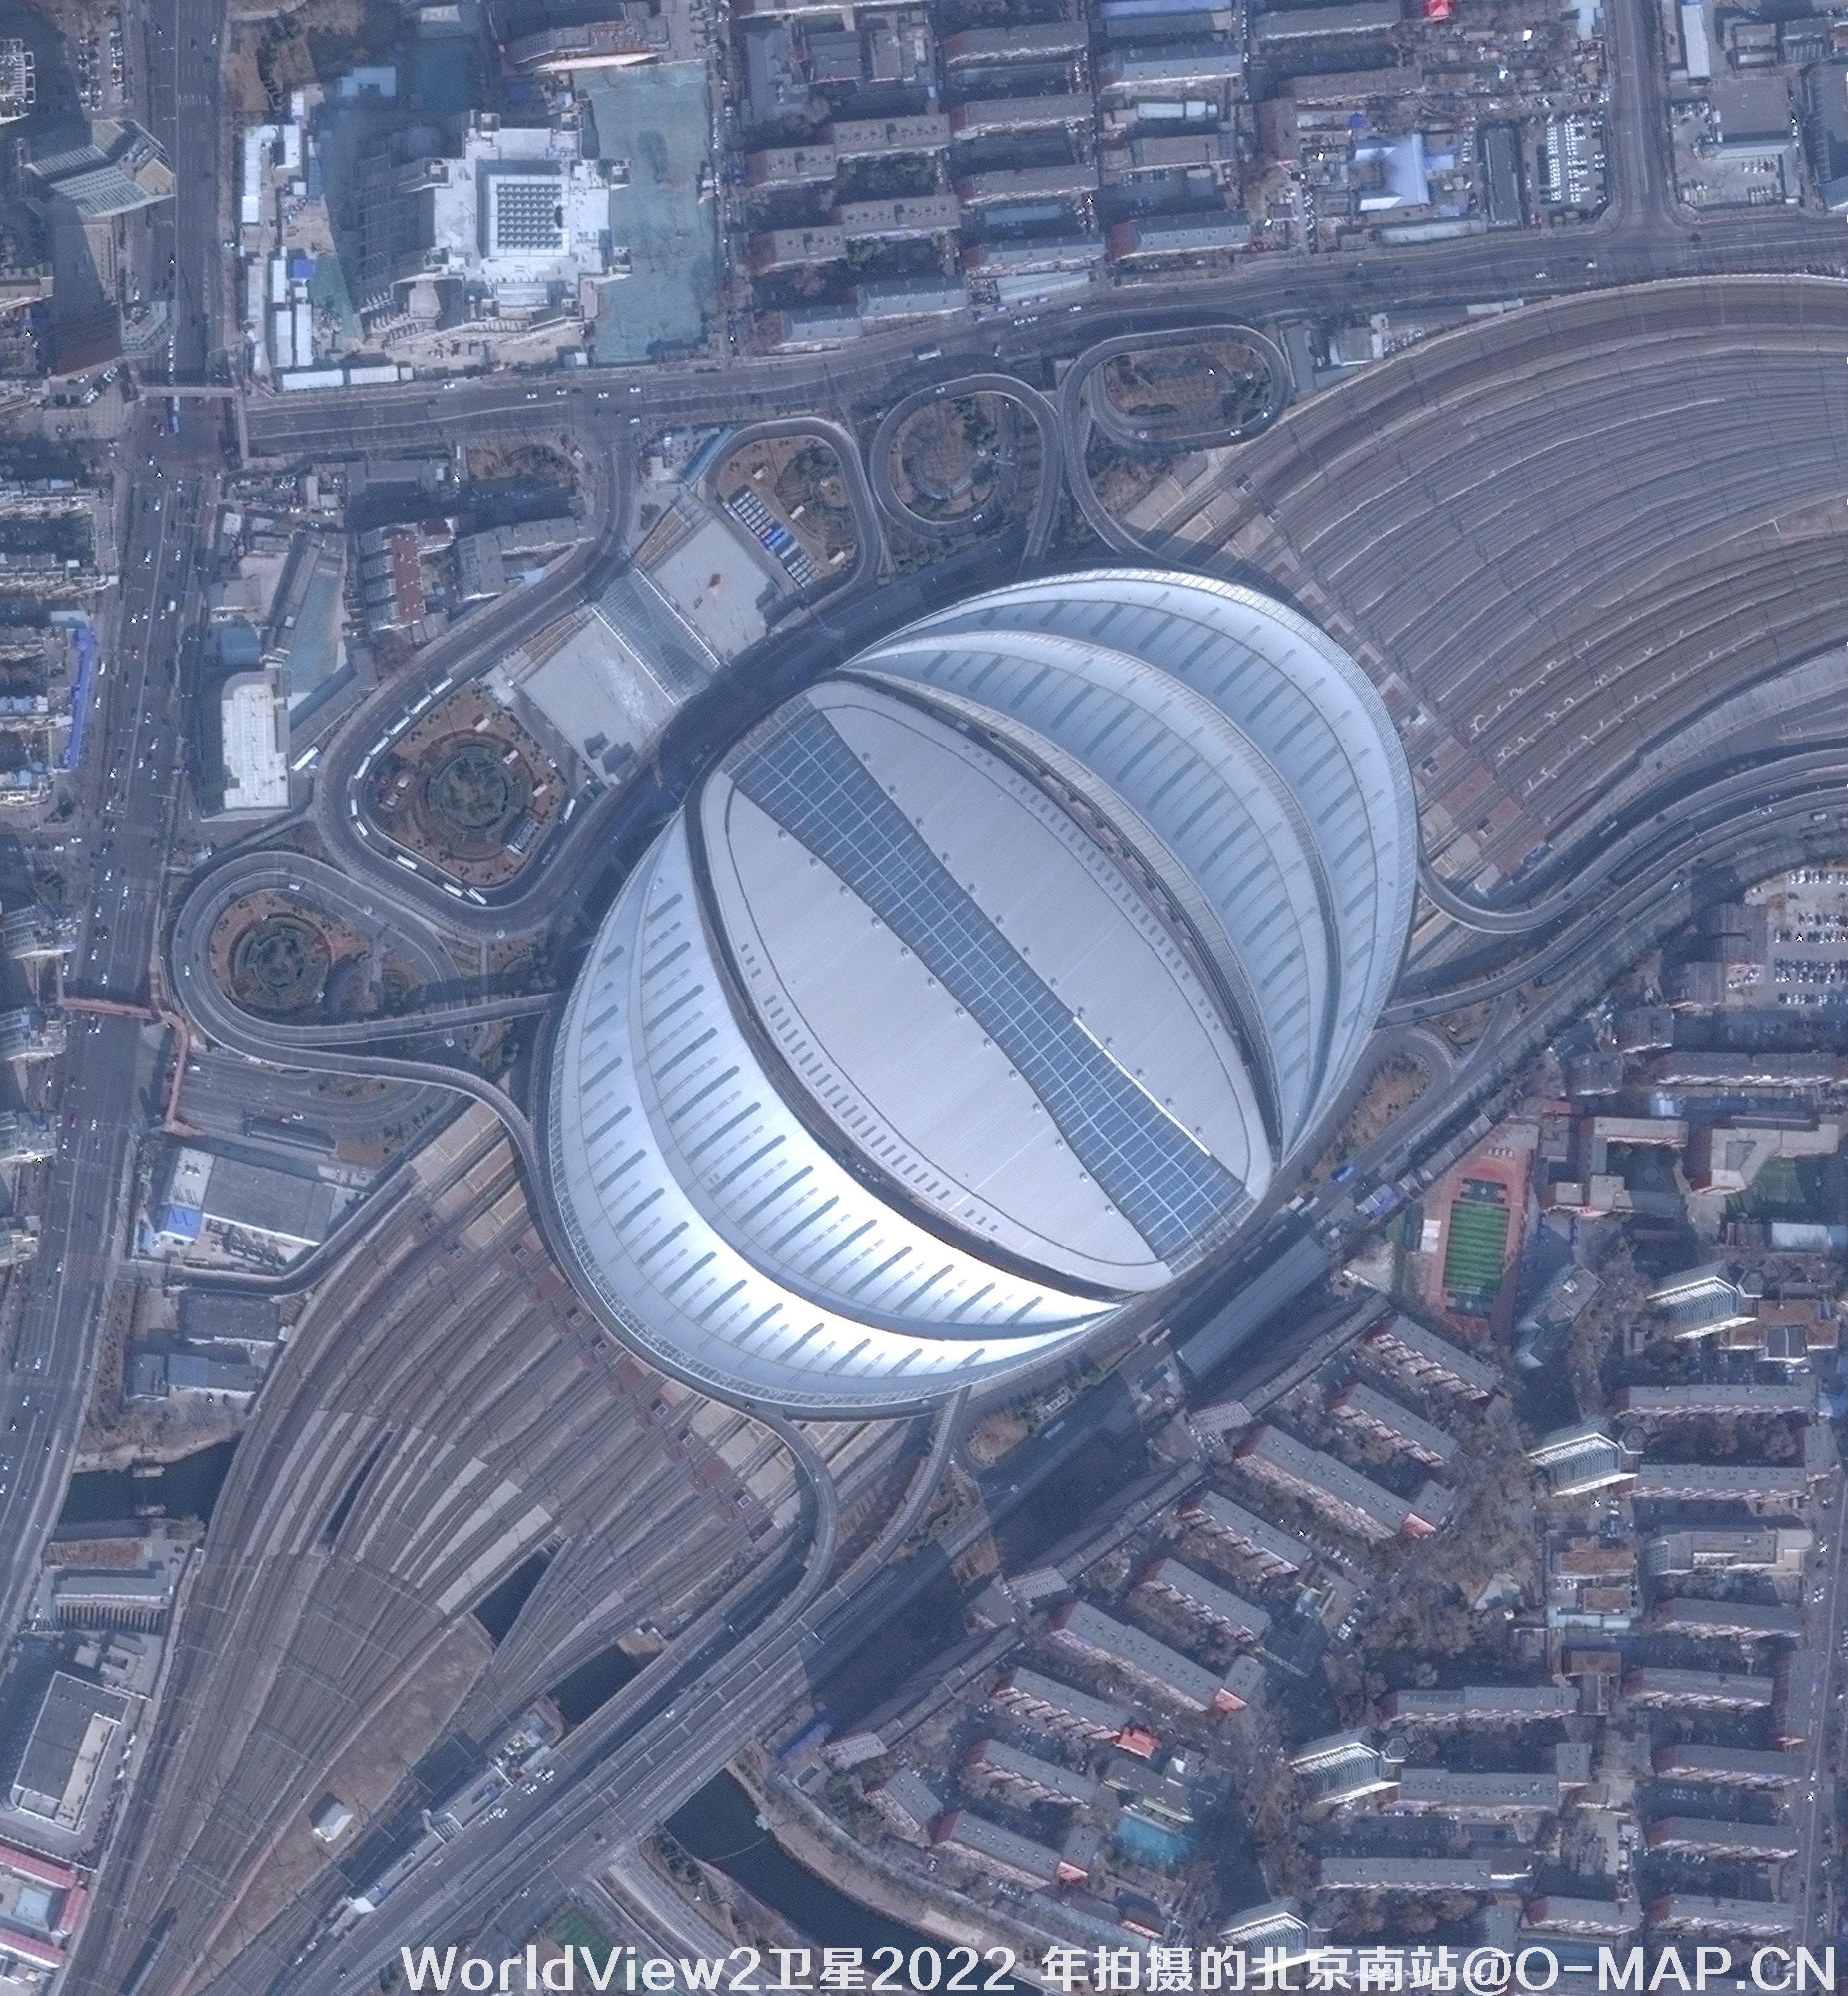 WorldView2卫星2022 年拍摄的北京南站卫星图片